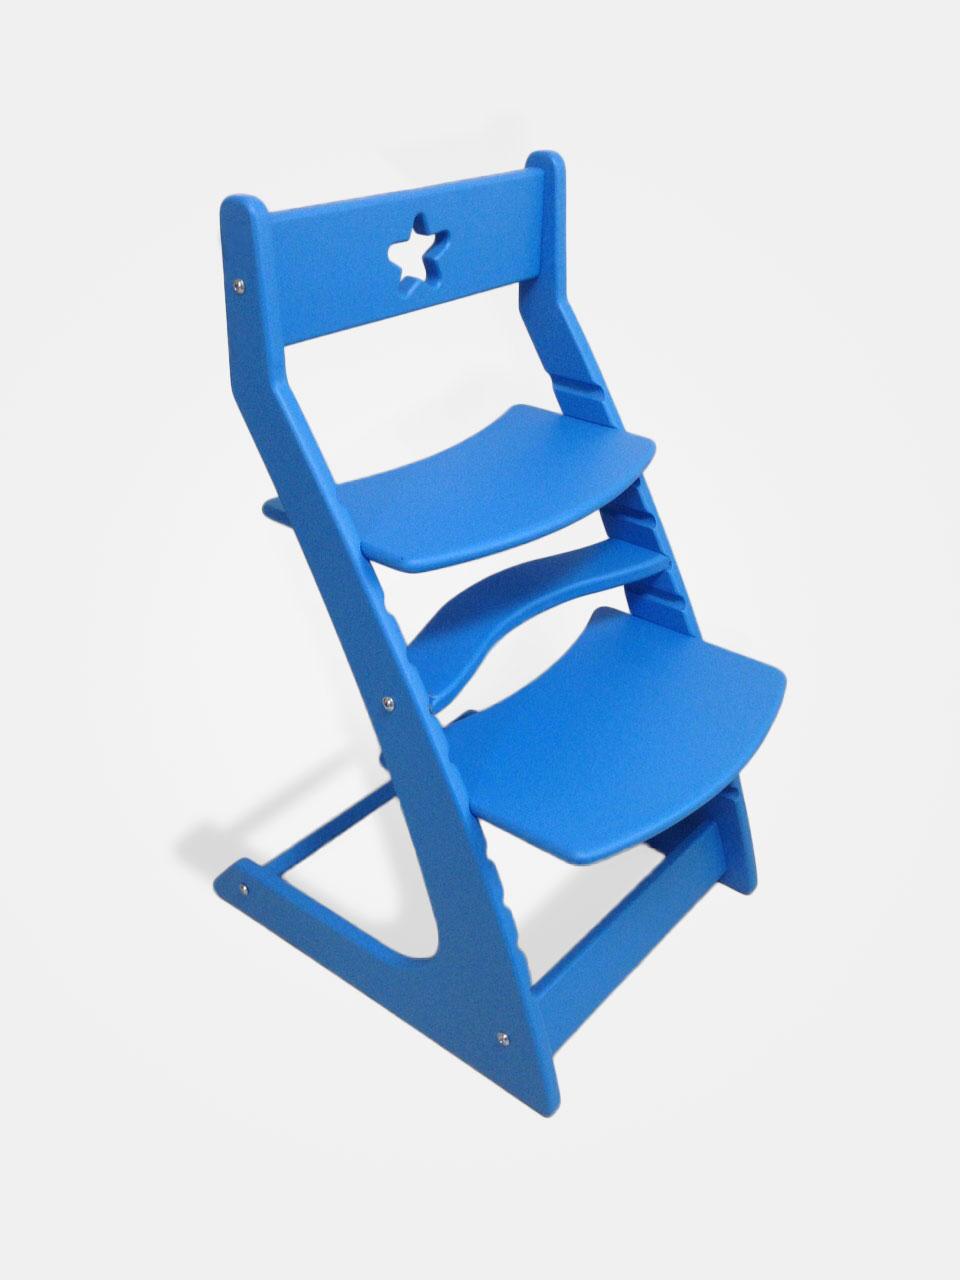 Регулируемый десткий стул "Ростик/Rostik" (Blue)